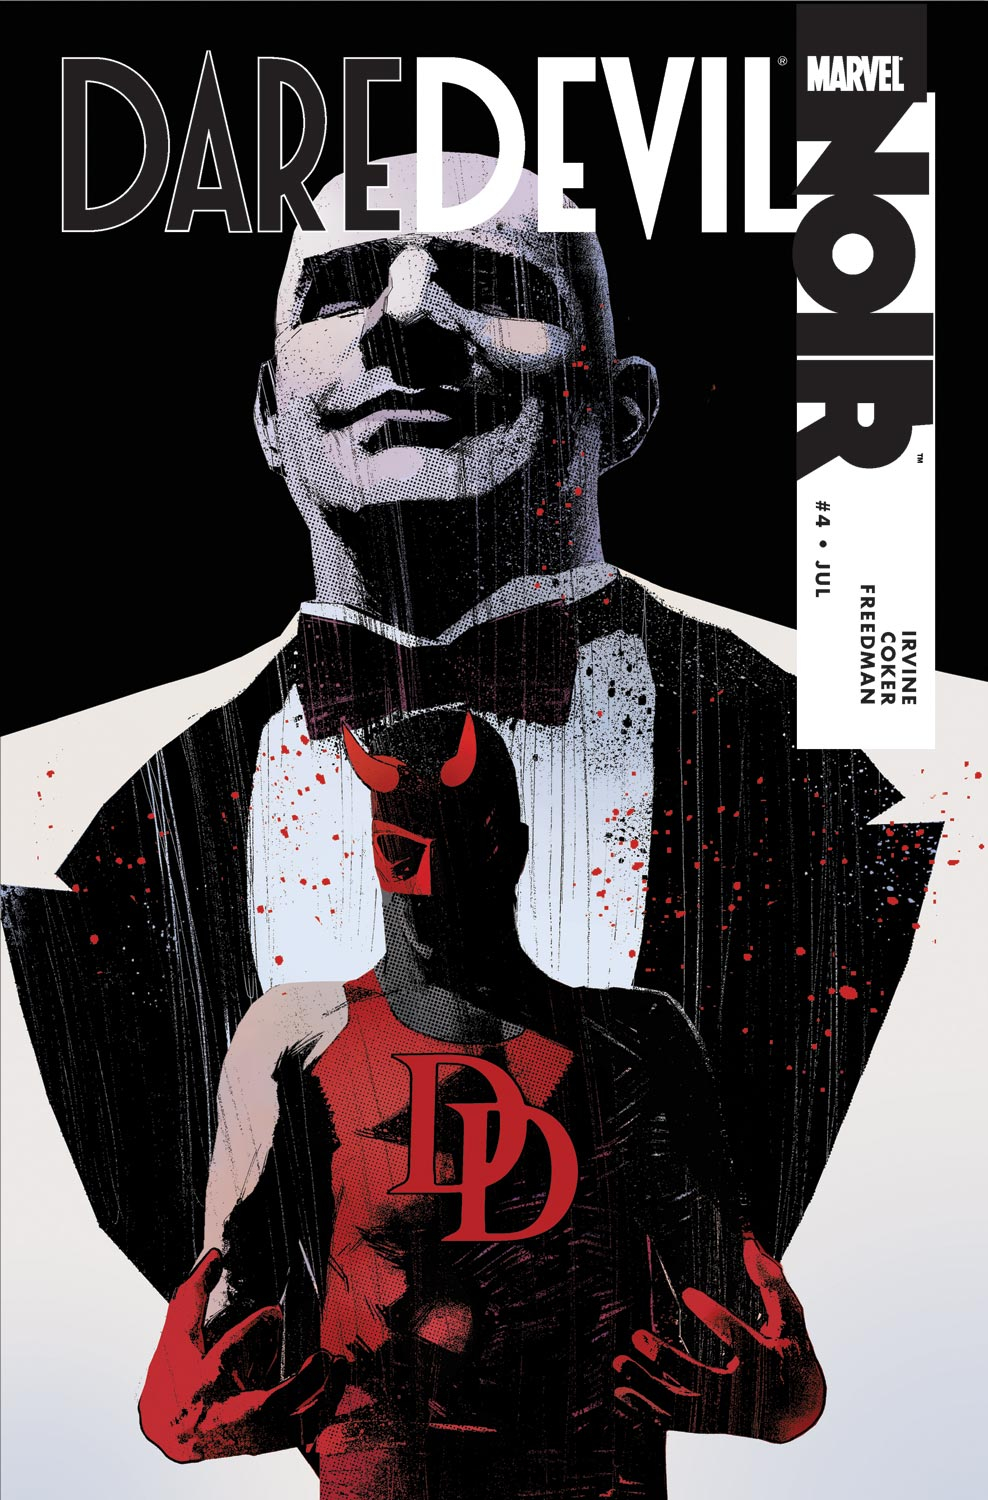 Daredevil Noir (2009) #4